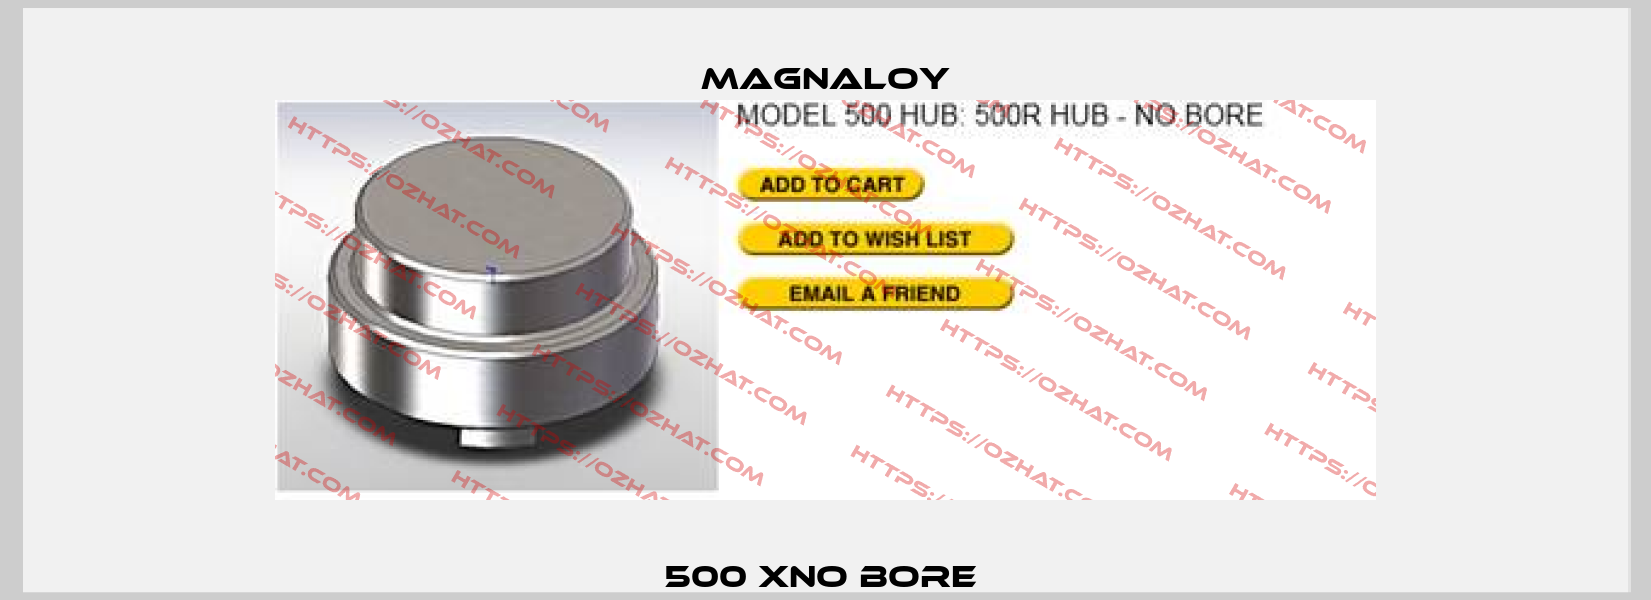 500 XNO BORE  Magnaloy